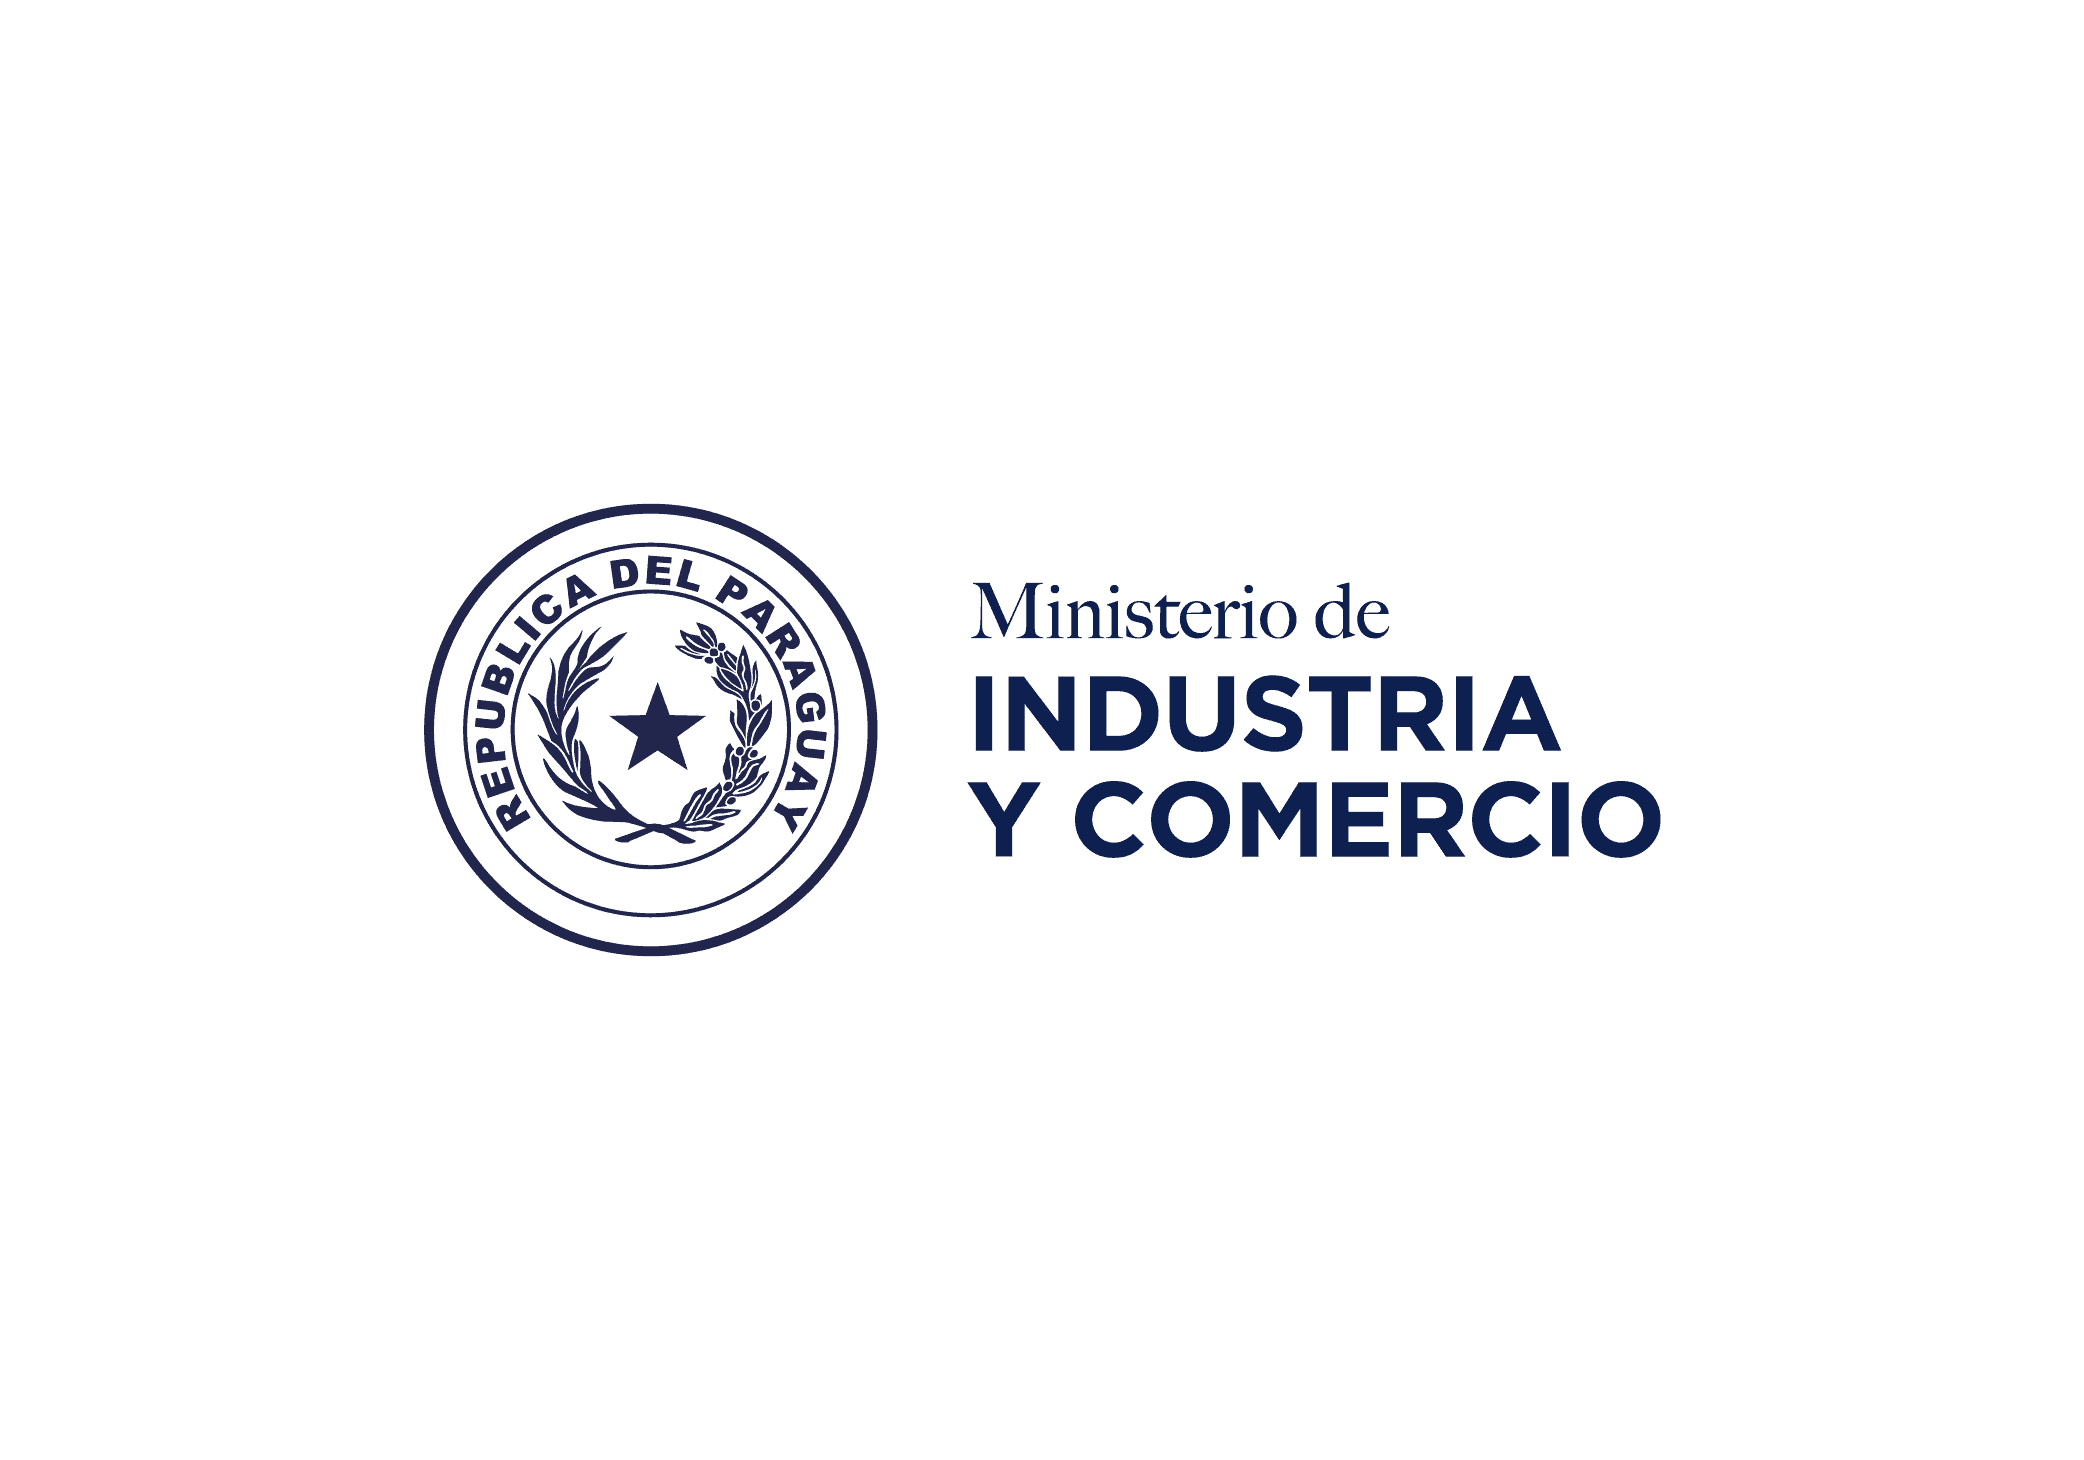 Logo del Ministerio de Industria y Comercio (MIC)